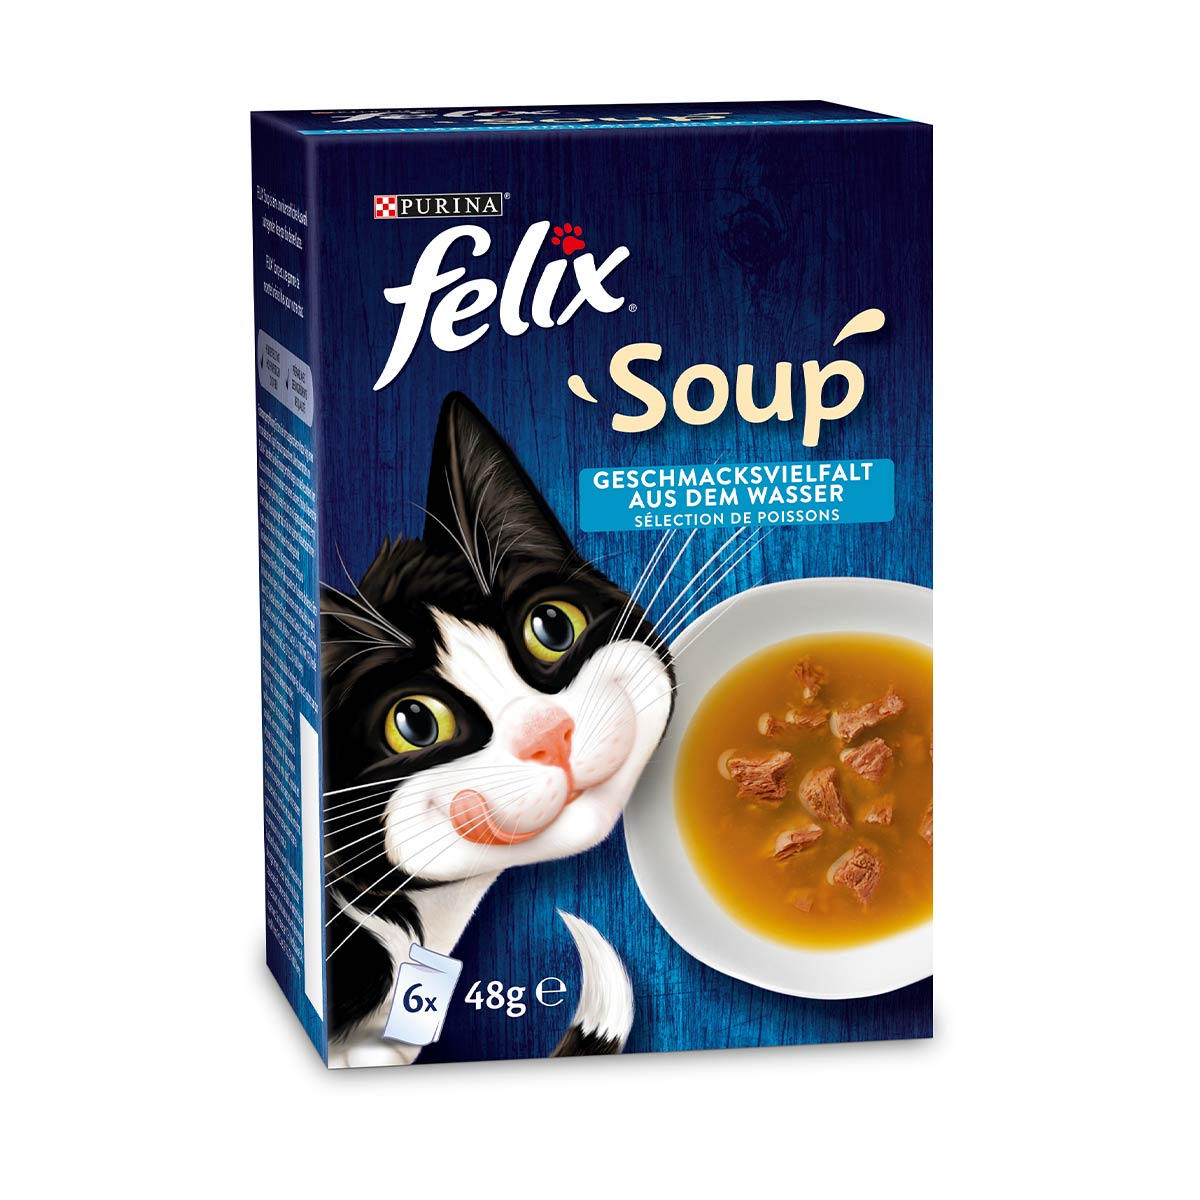 FELIX Soup výběr z vody s treskou, tuňákem a platýsem 6 × 48 g